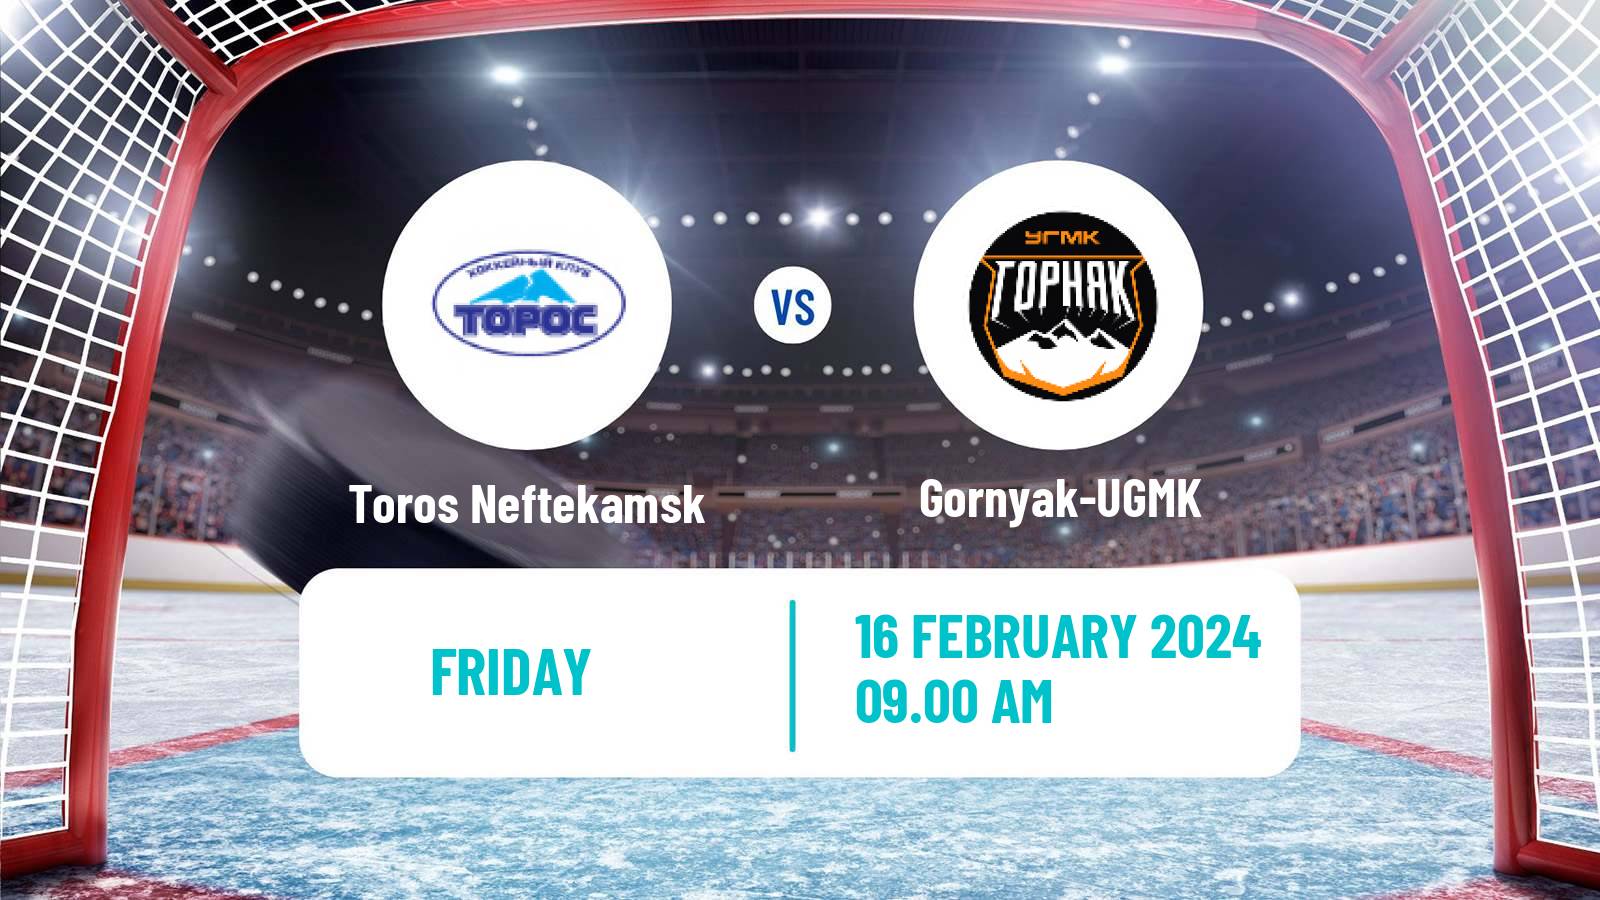 Hockey VHL Toros Neftekamsk - Gornyak-UGMK